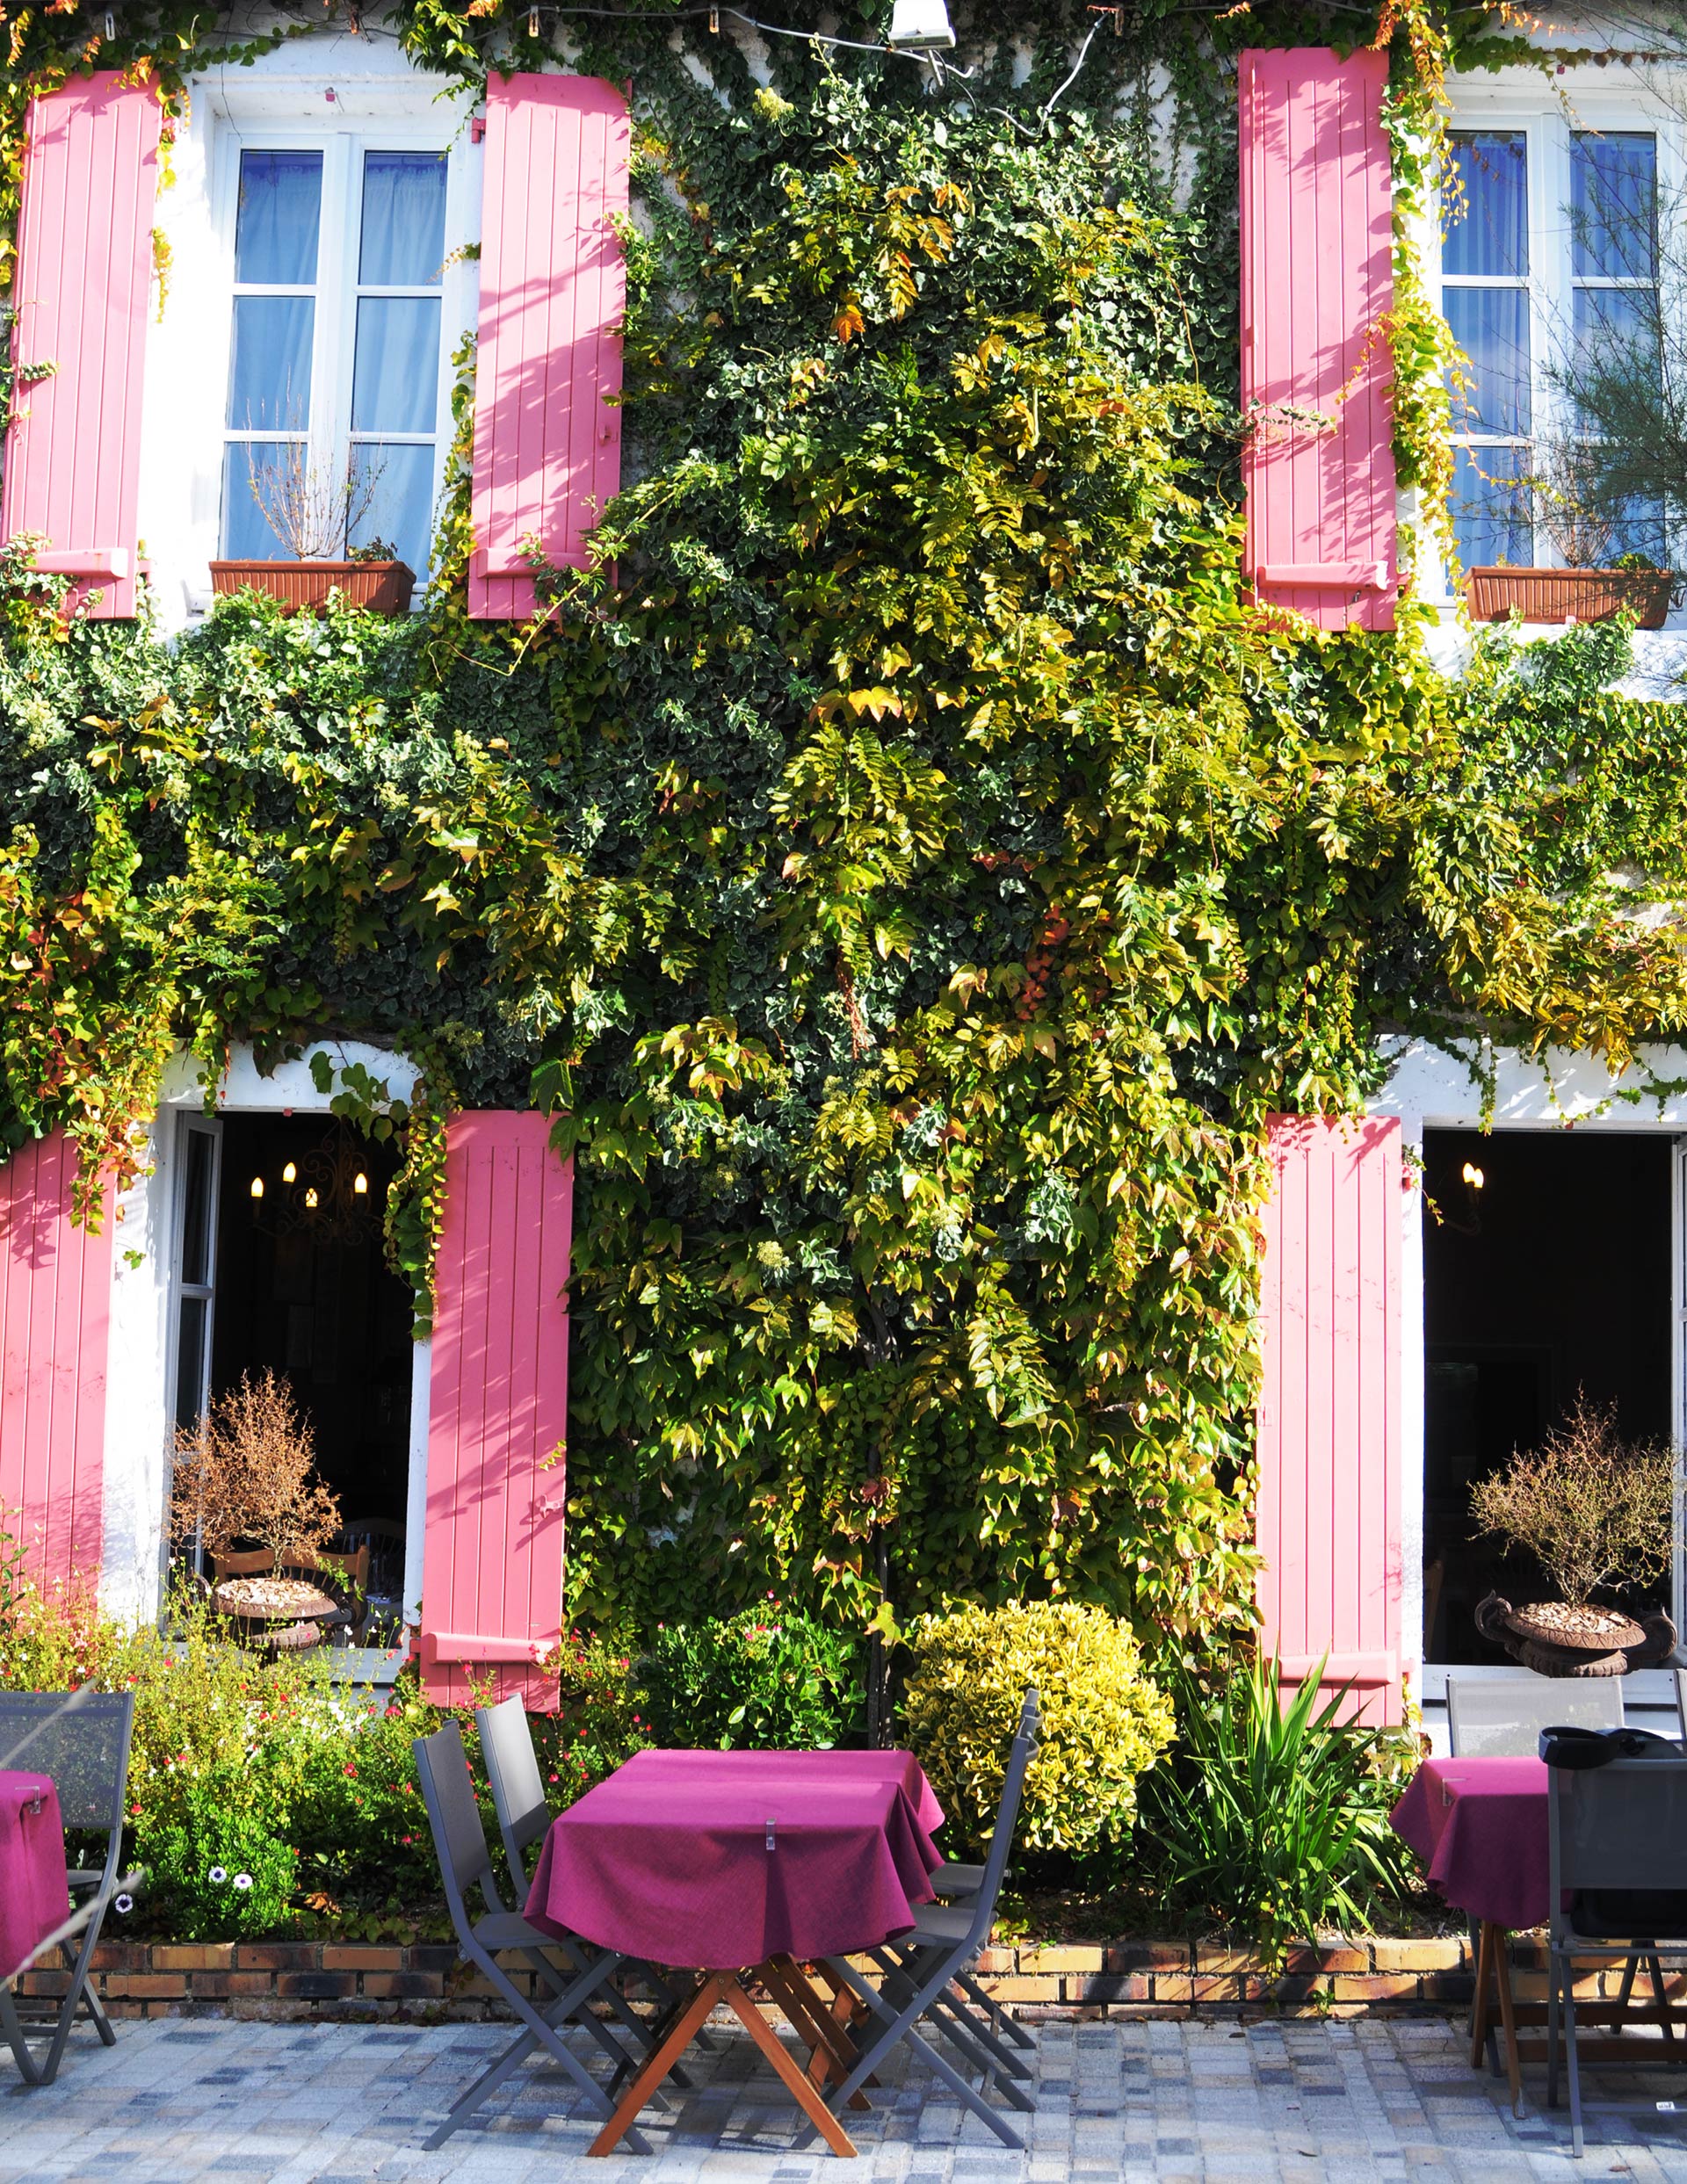 Maison bourgeoise du XVIIIe siècle à Noirmoutier - Restaurant Le Grand Four